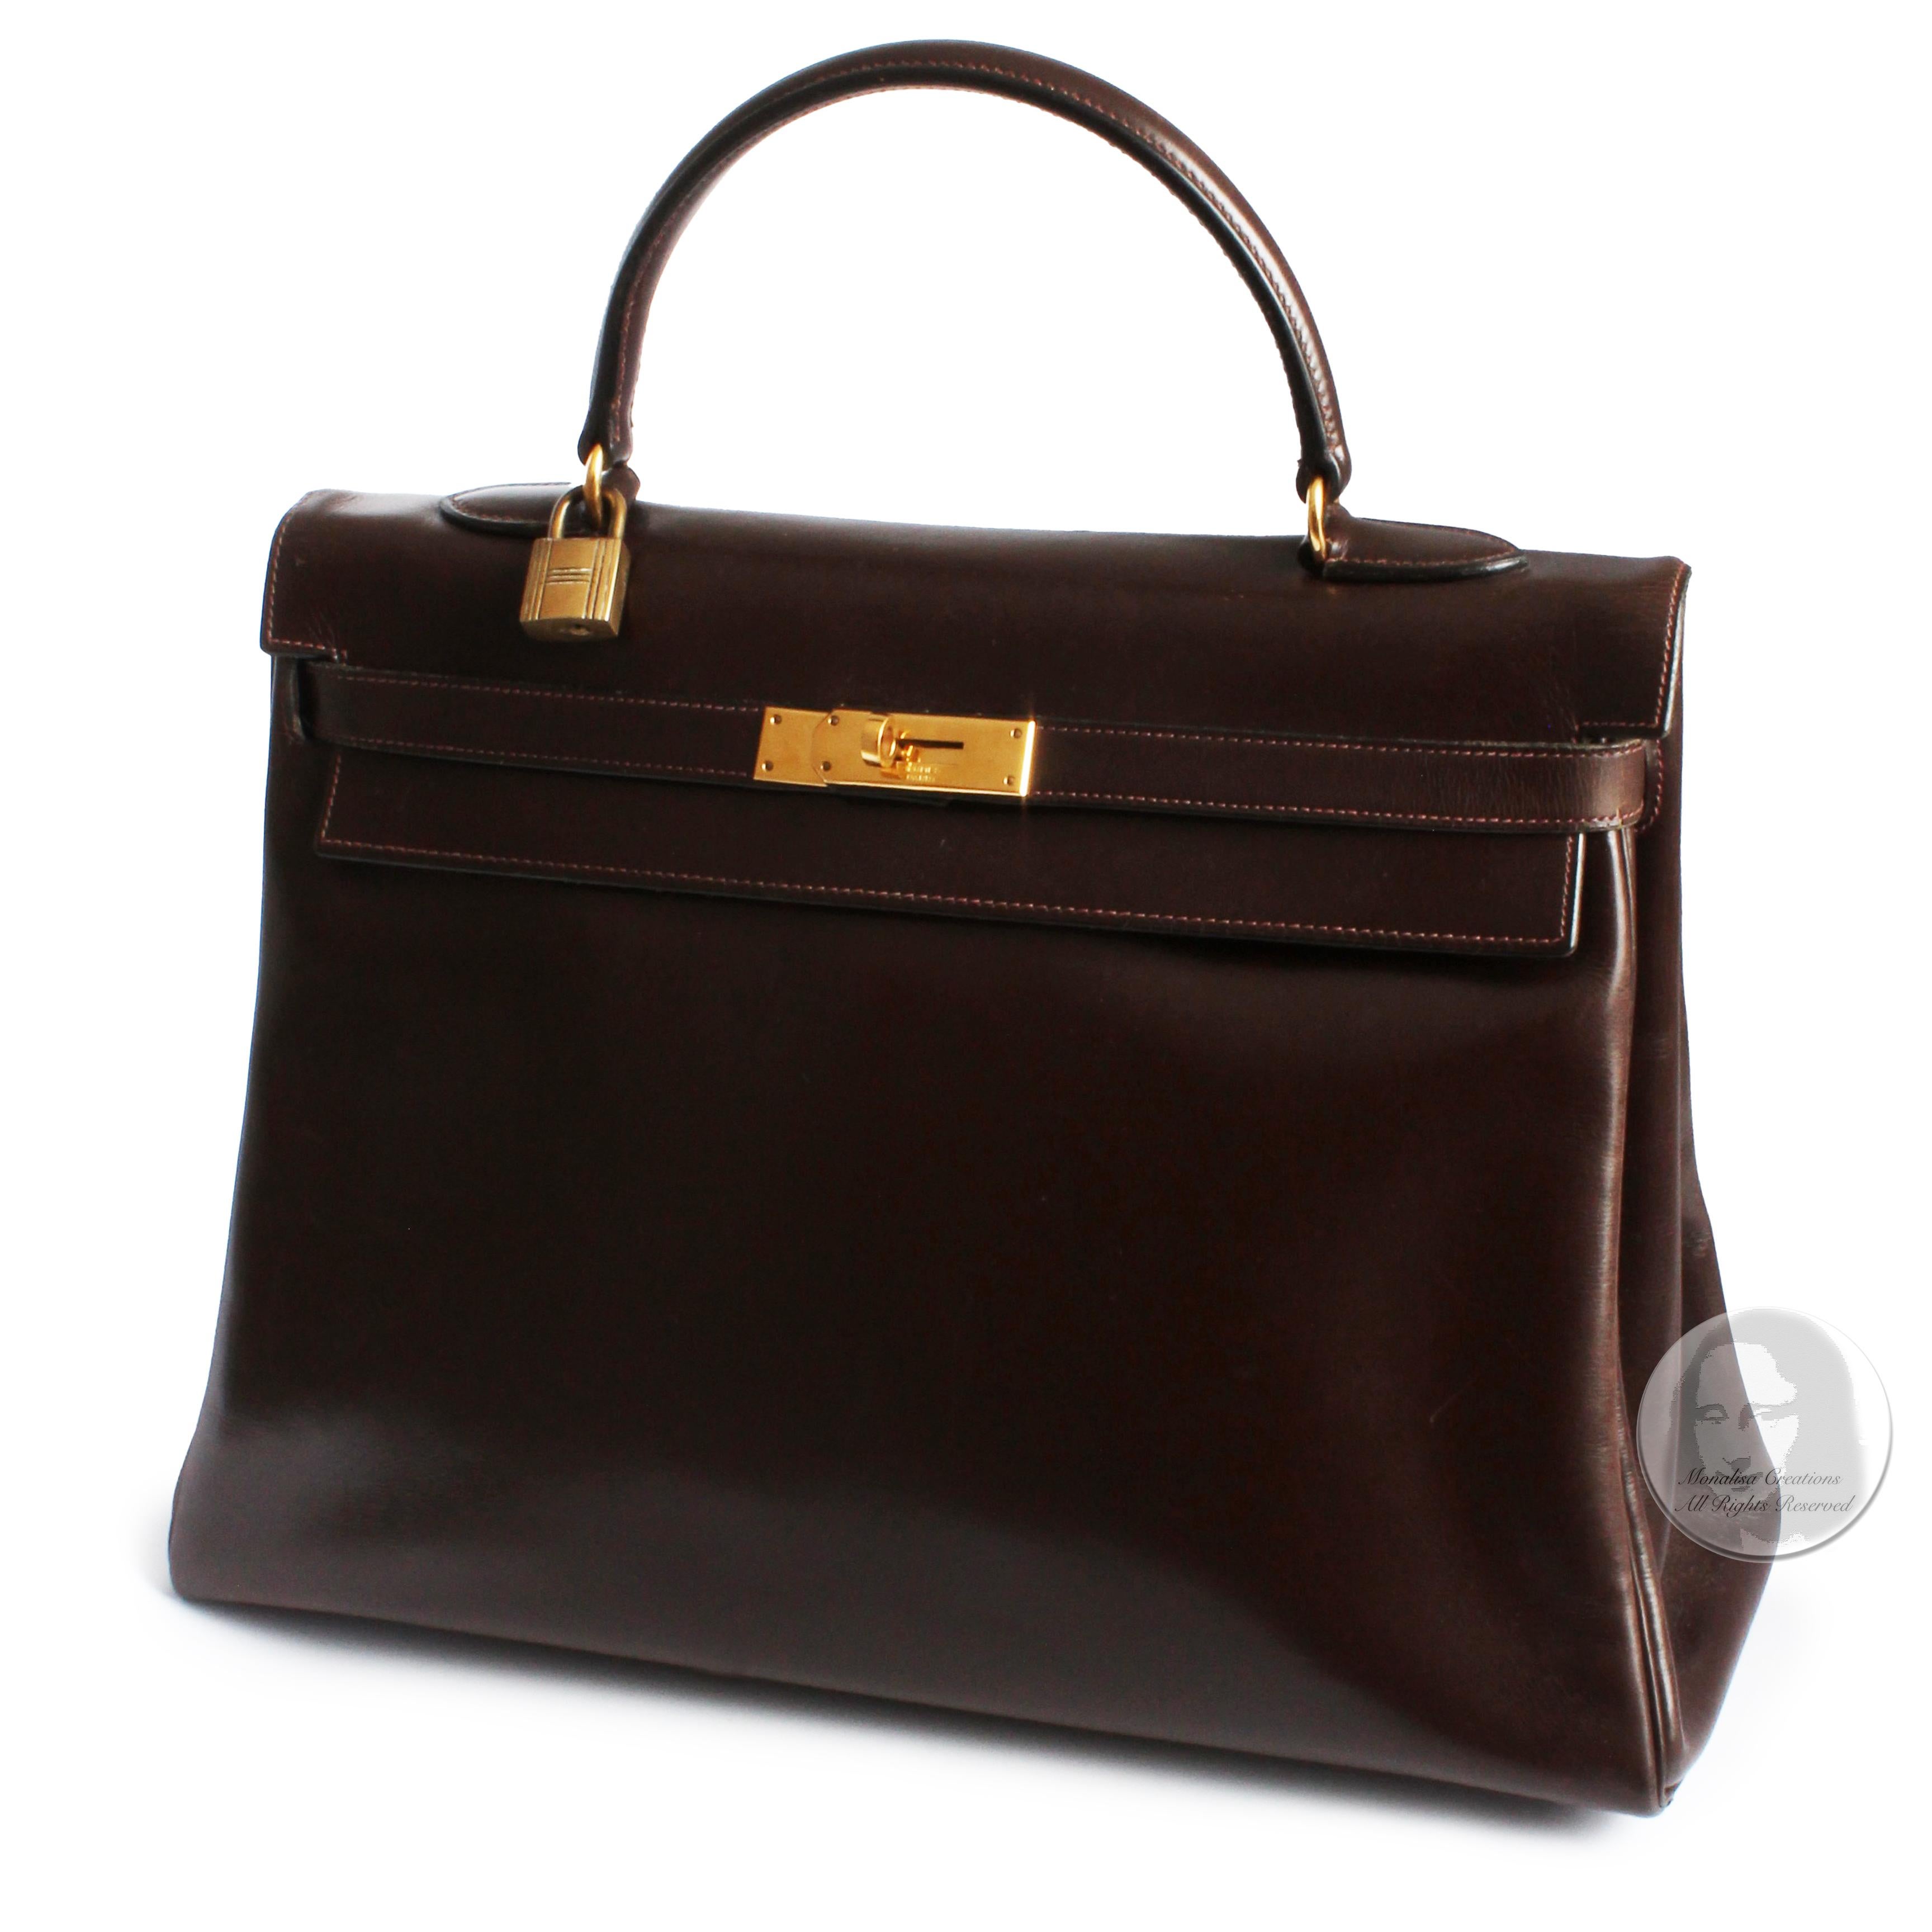 Hermes Kelly Bag 35cm Retourne Brown Box Leather Top Handle Bag 1945 Vintage  2